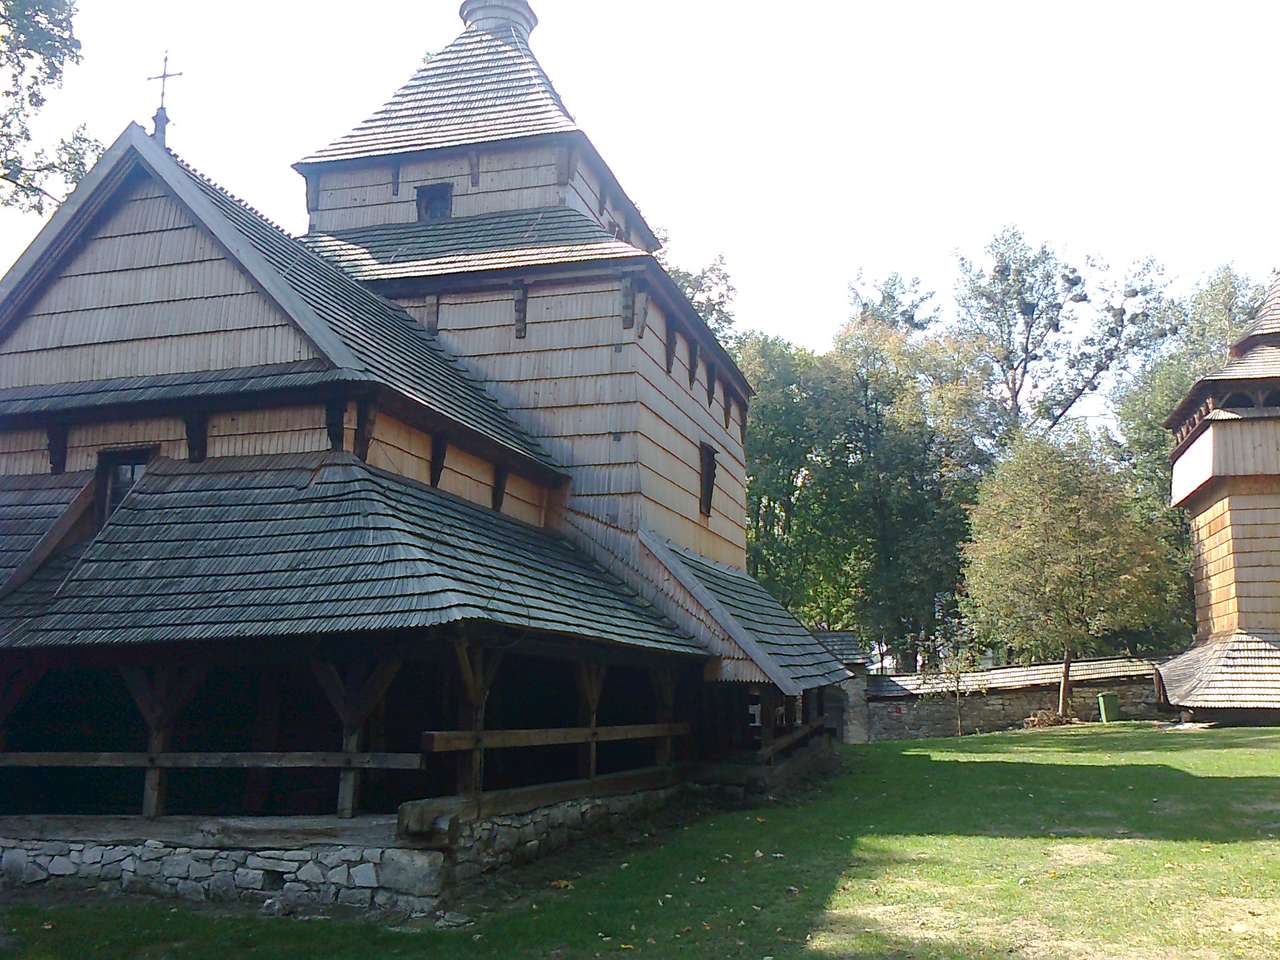 Cerkiew w Radrużu puzzle ze zdjęcia